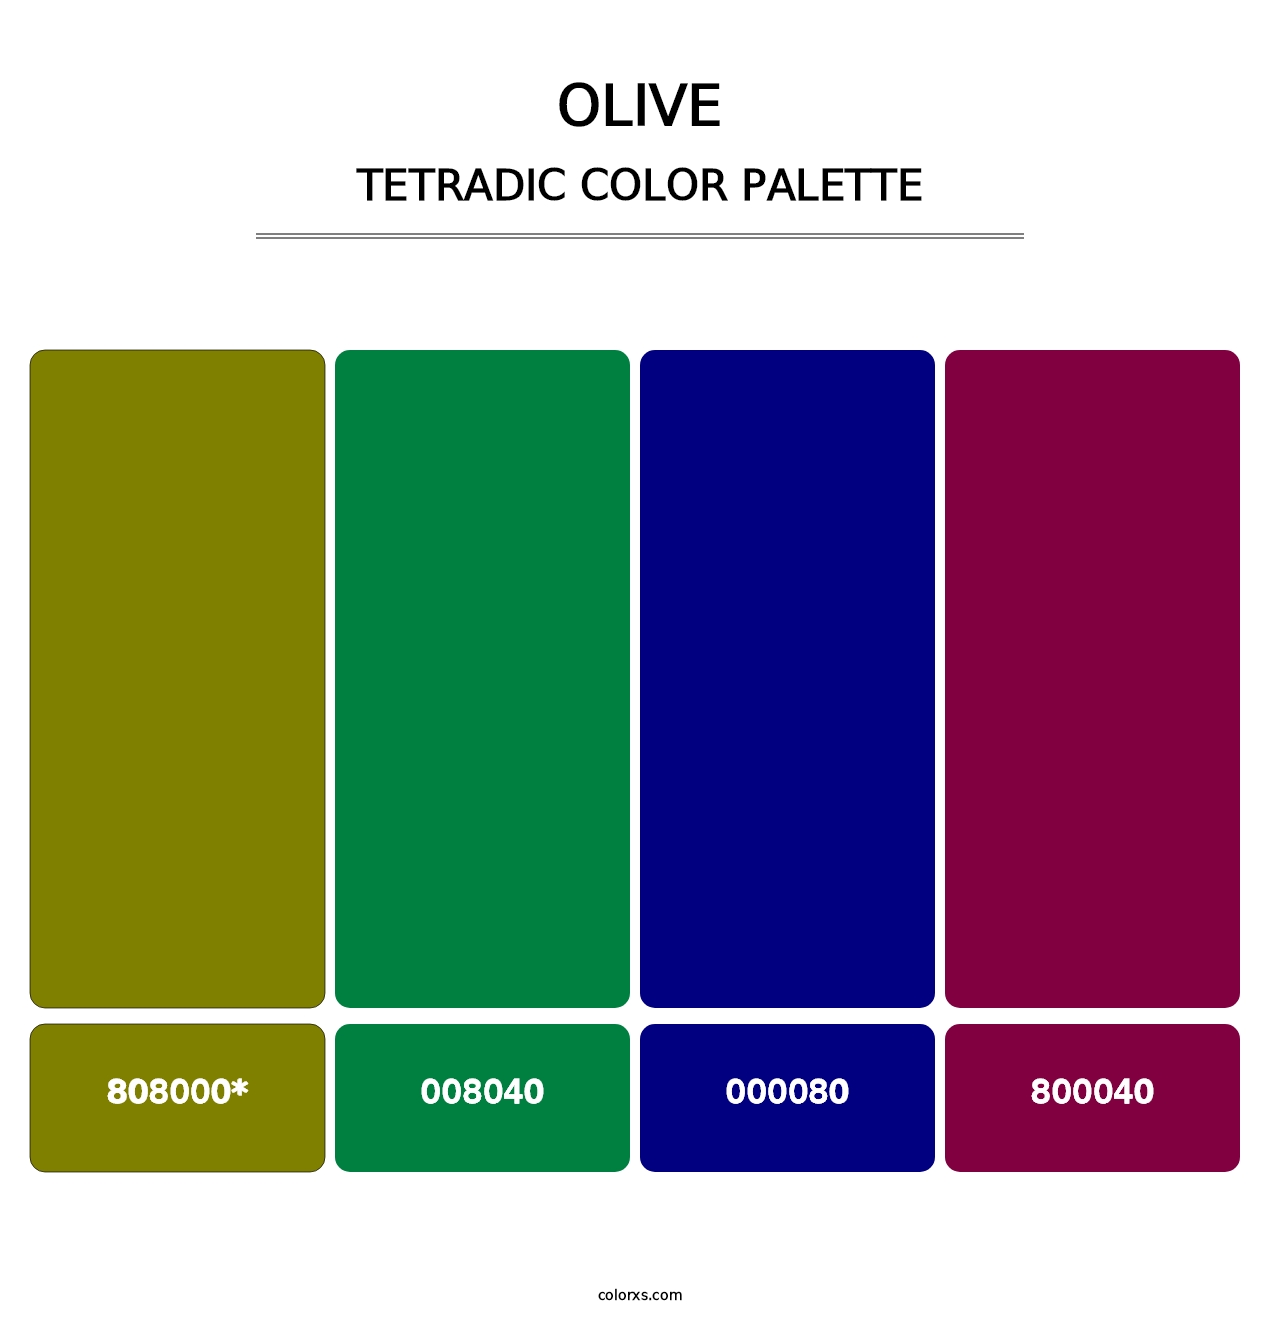 Olive - Tetradic Color Palette